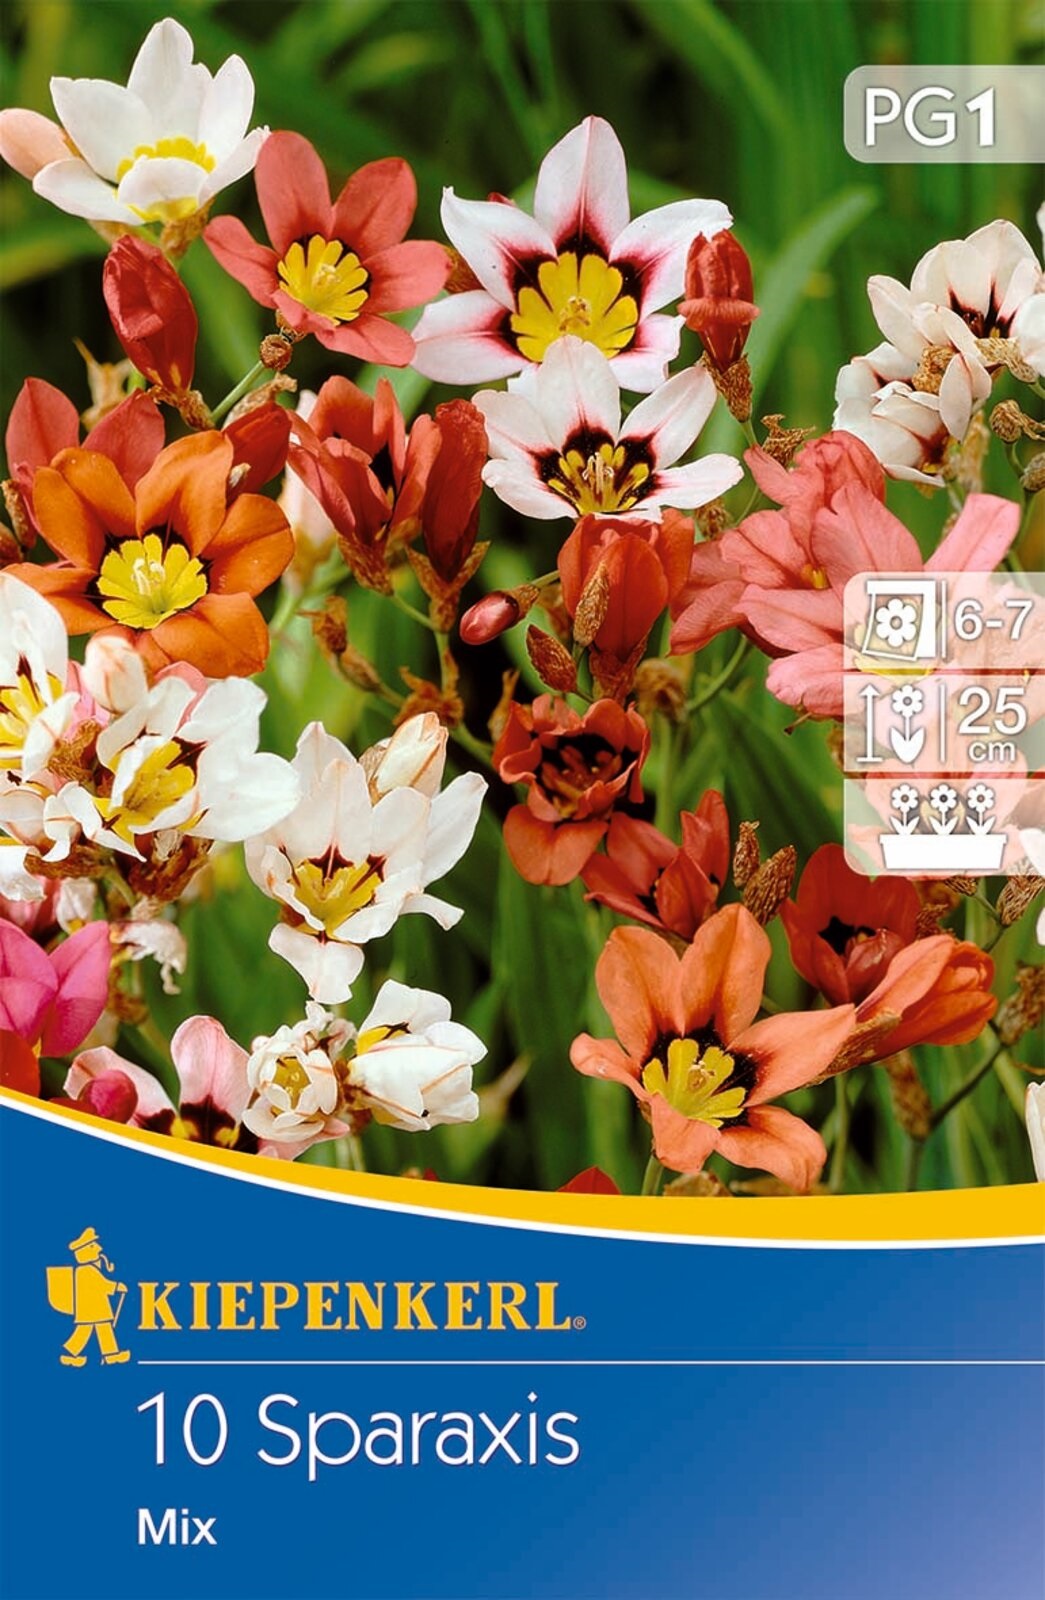 Virághagyma Sparaxis (Cigányvirág) tricolorszínkeverék Kiepenkerl 10 db